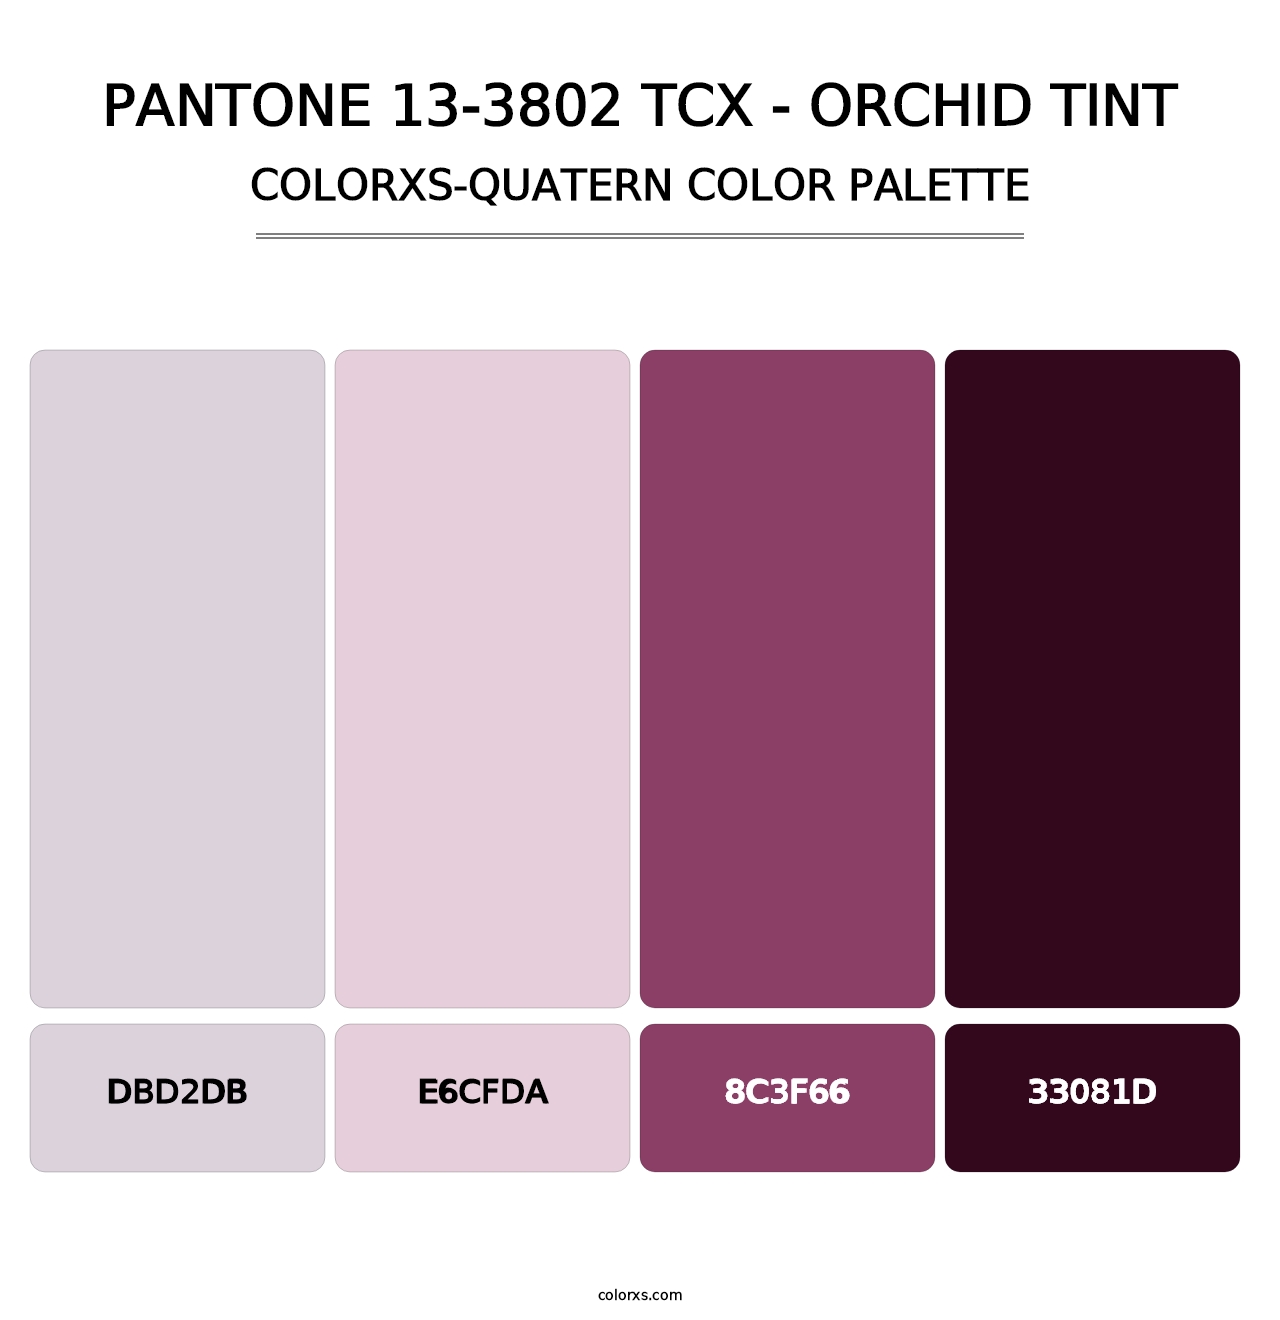 PANTONE 13-3802 TCX - Orchid Tint - Colorxs Quatern Palette